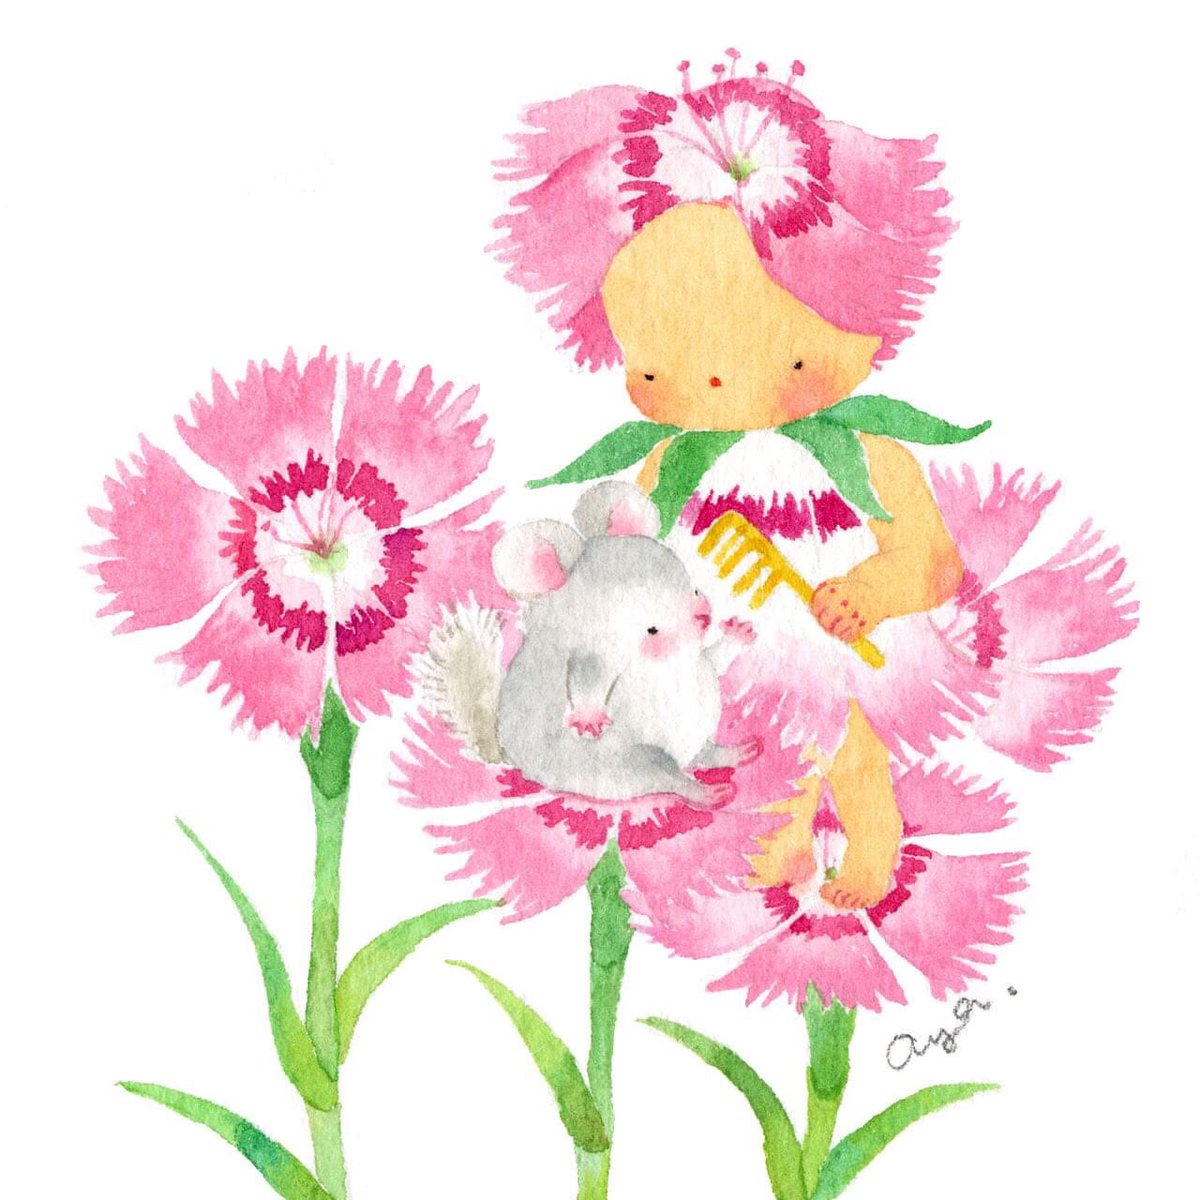 こばやしあや En Twitter 今日の誕生花 7月3日 ナデシコ Pink Pink ピンクのナデシコの花言葉は Pure Love 純粋な愛 チンチラのたたずまいがたまらない 絵 水彩画 イラスト Illustration Happybirthday 花 Flower 7月14日 Pinkpink